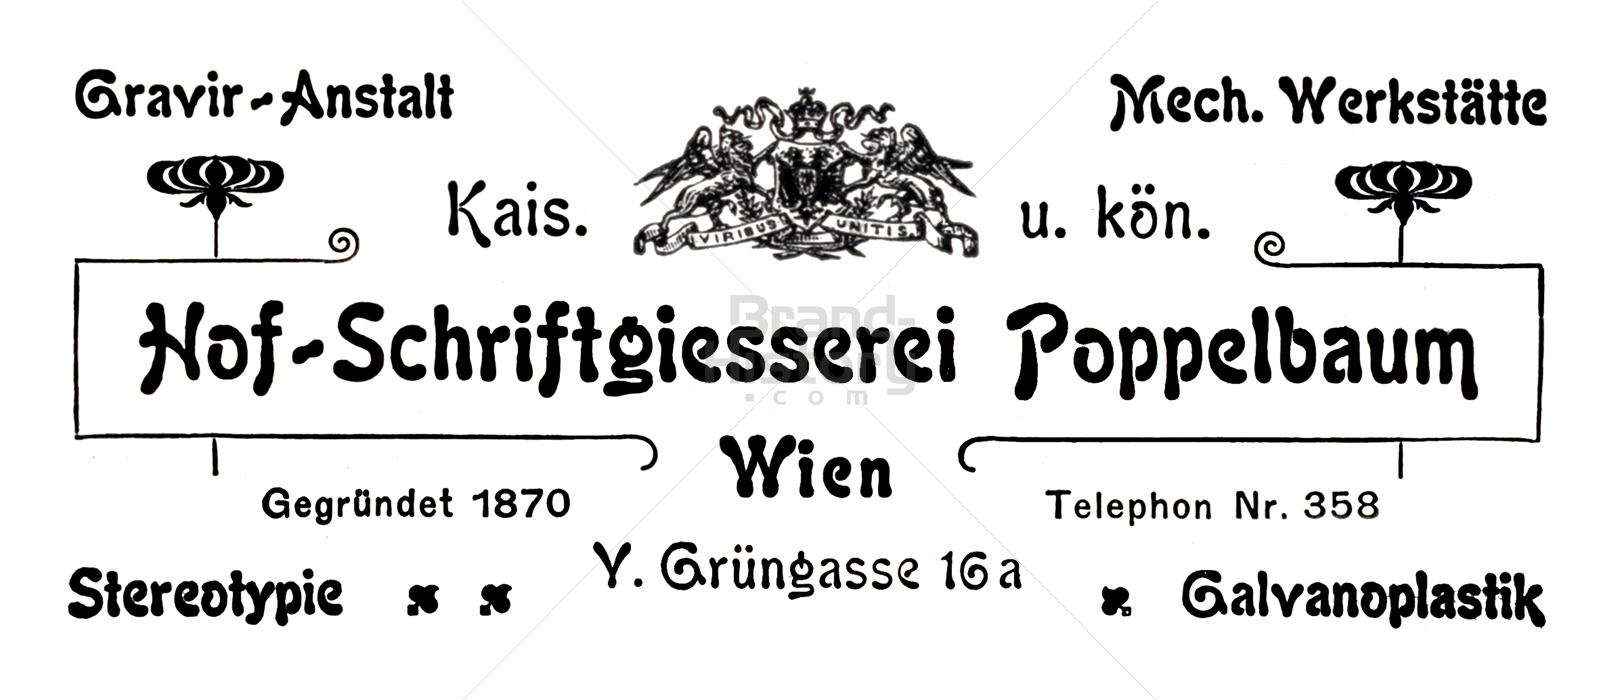 Hof-Schriftgiesserei Poppelbaum